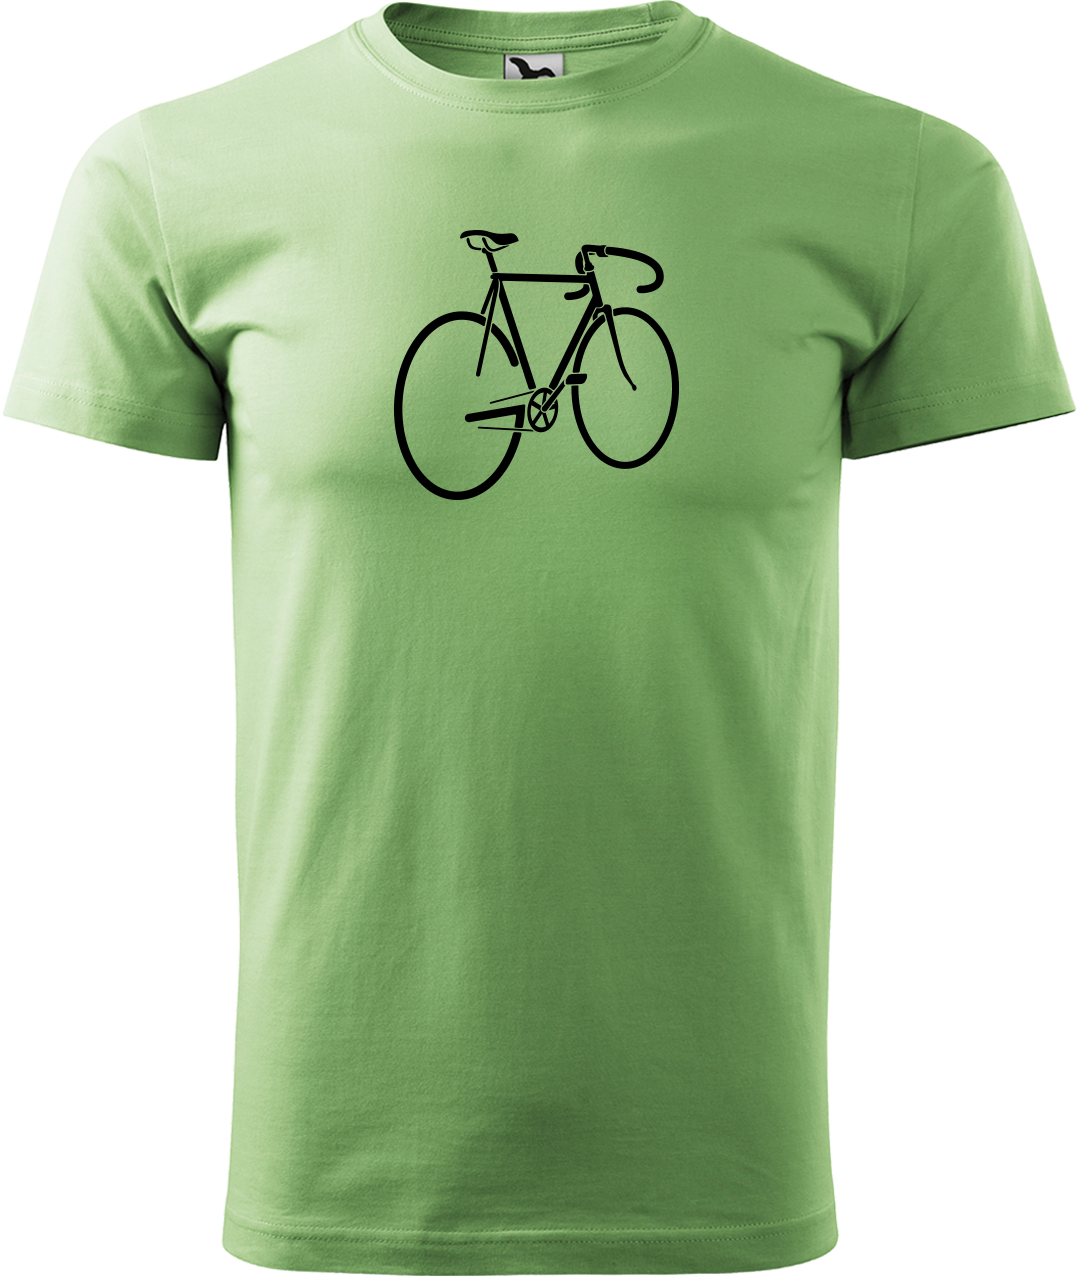 Pánské tričko s kolem - Pánské kolo Velikost: L, Barva: Trávově zelená (39)